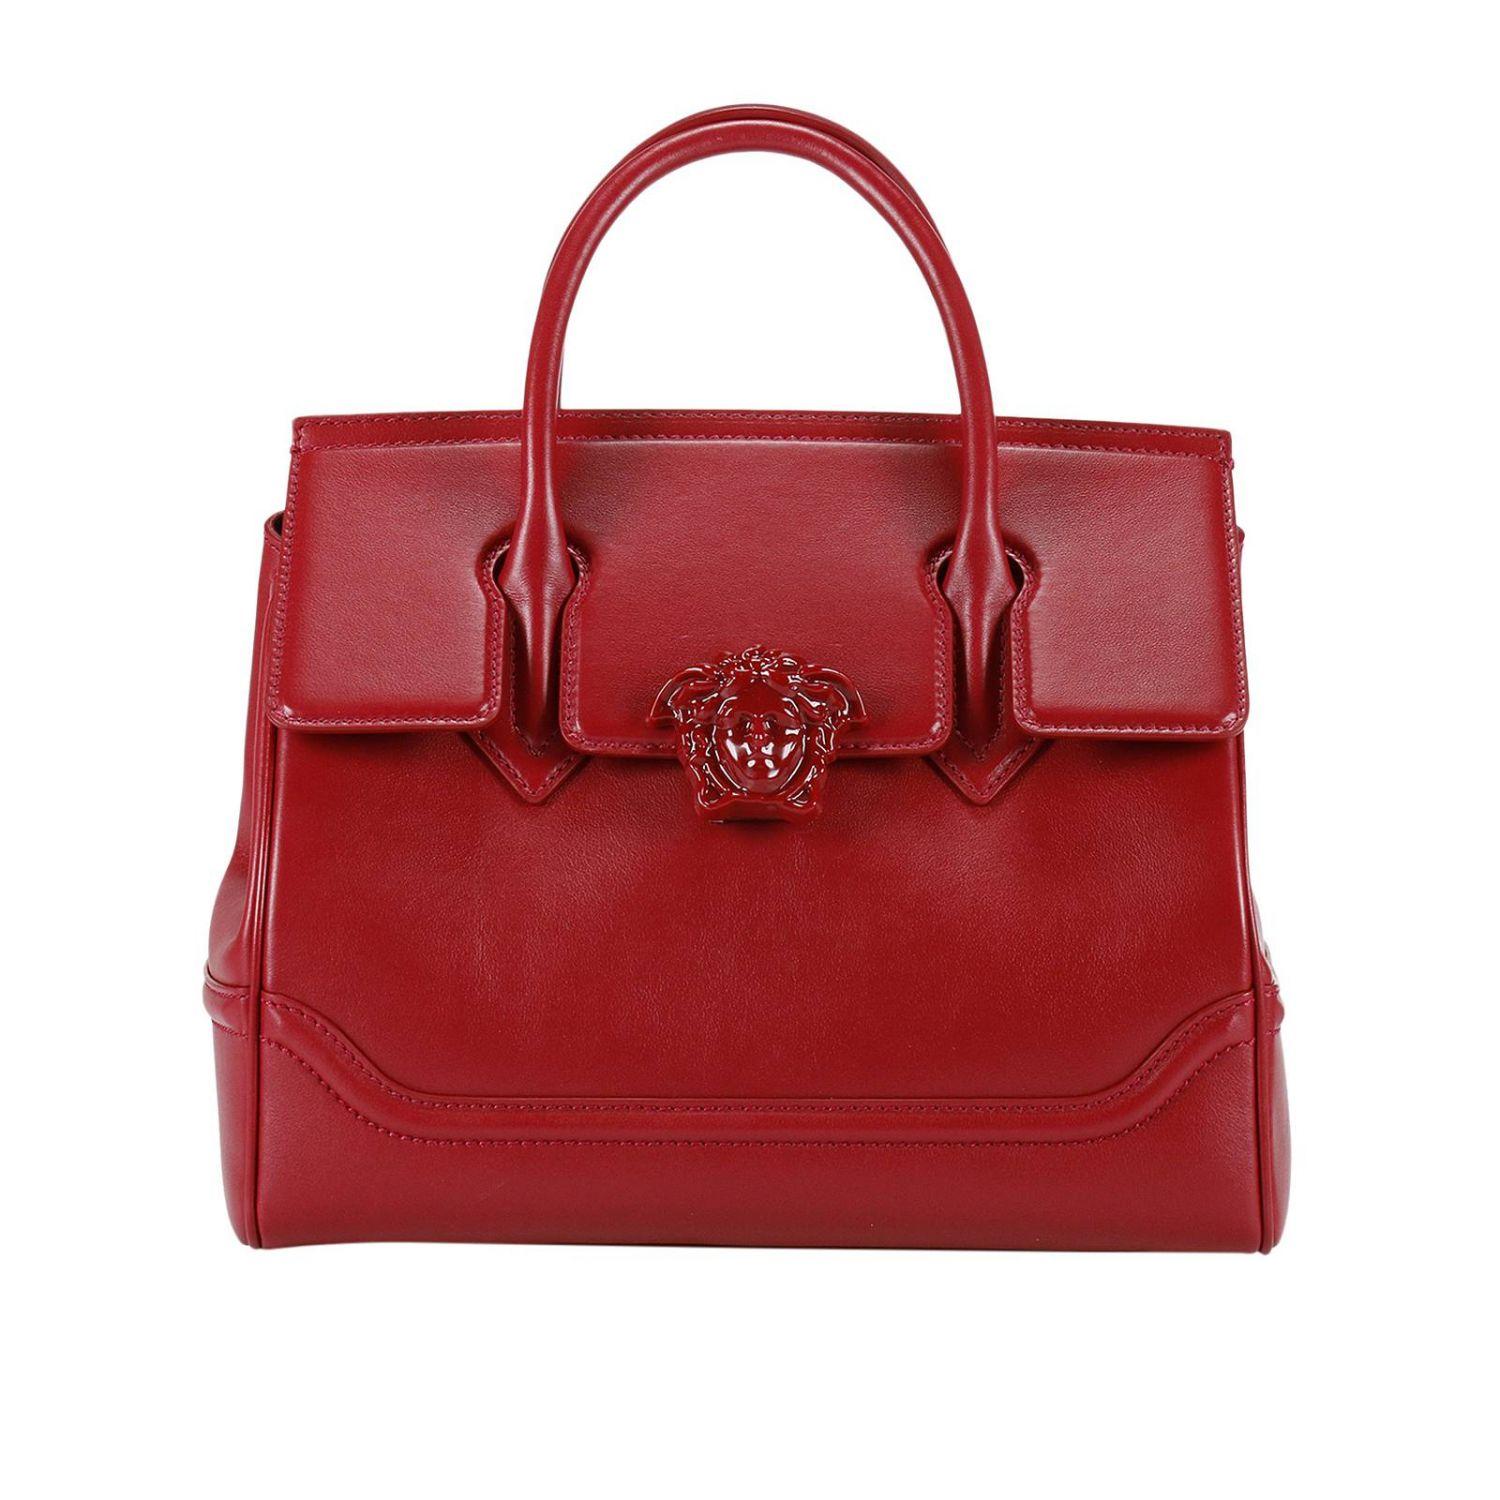 Lyst - Versace Handbag Women in Red